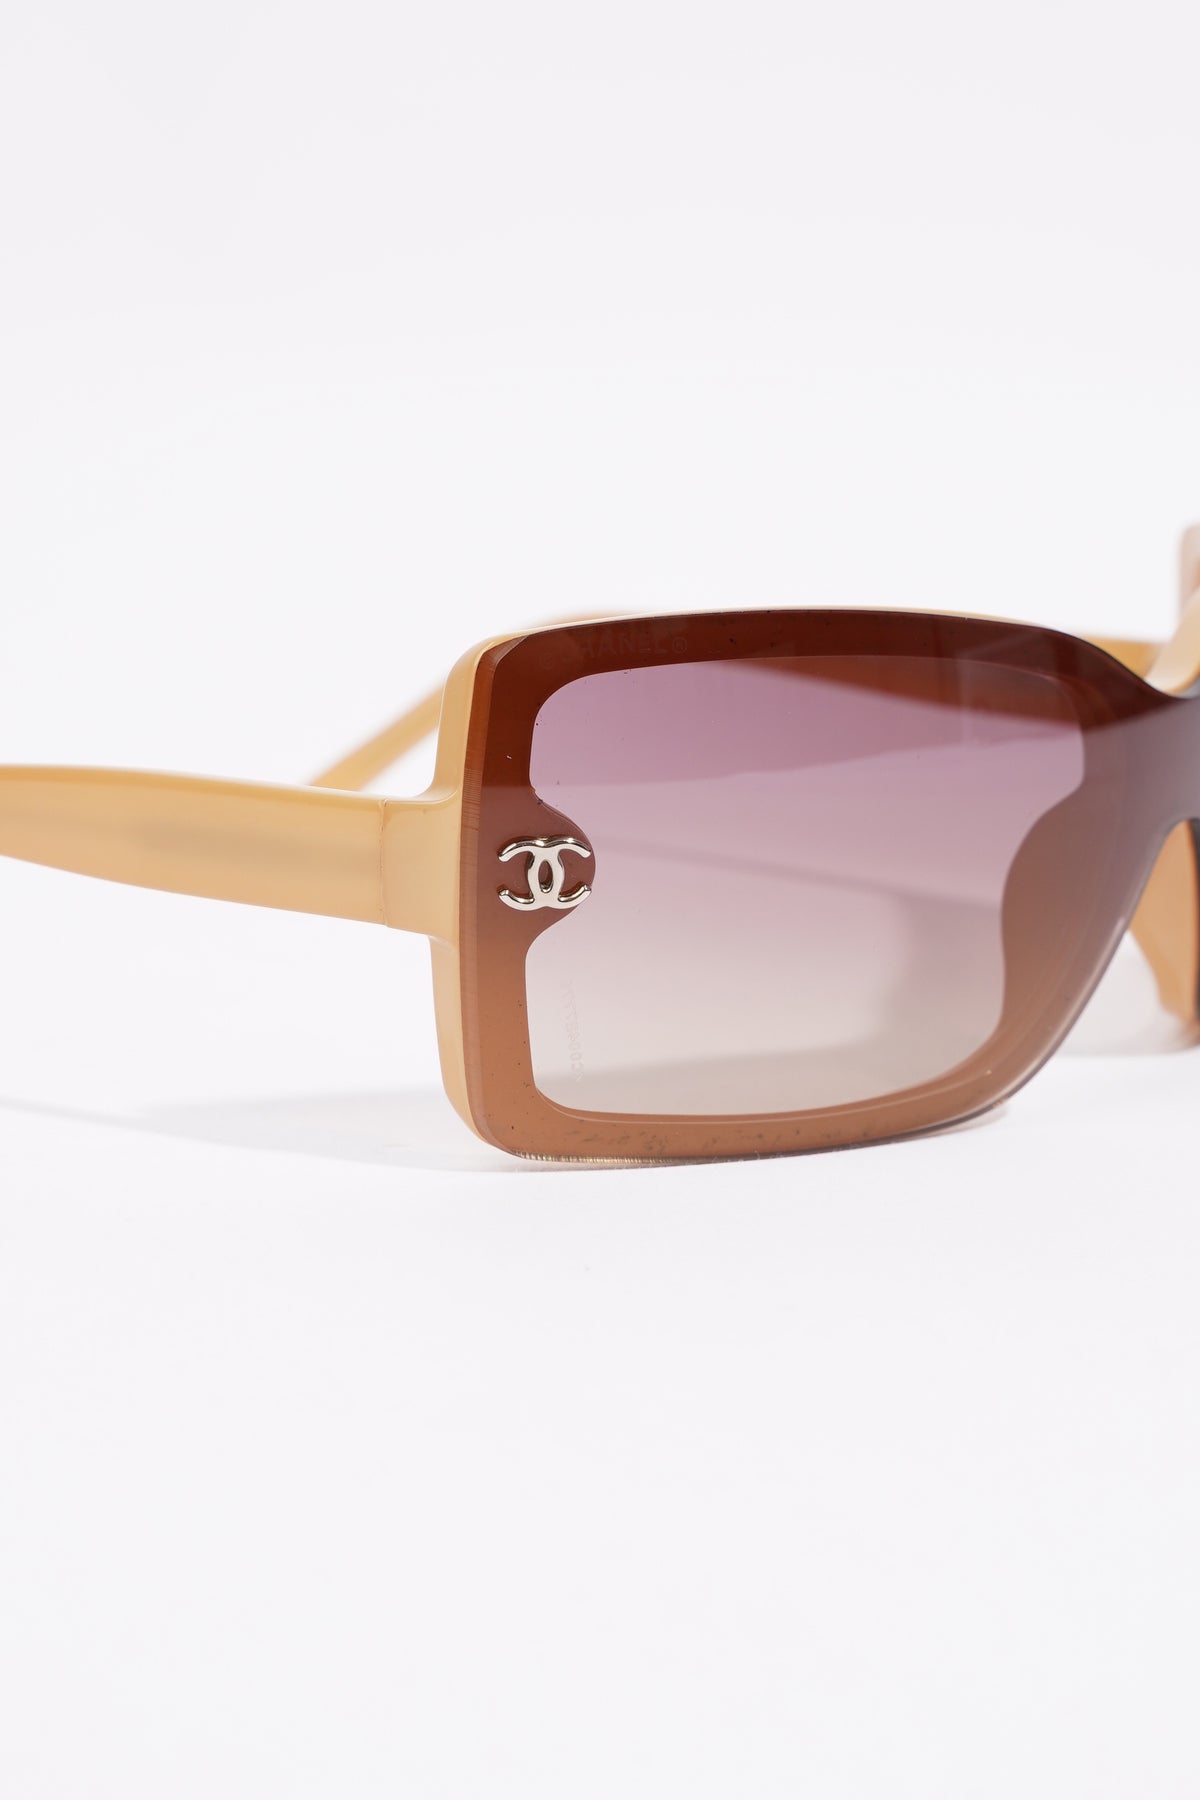 Chanel Interlocking CC Logo Oversize Sunglasses - Black Sunglasses,  Accessories - CHA927459